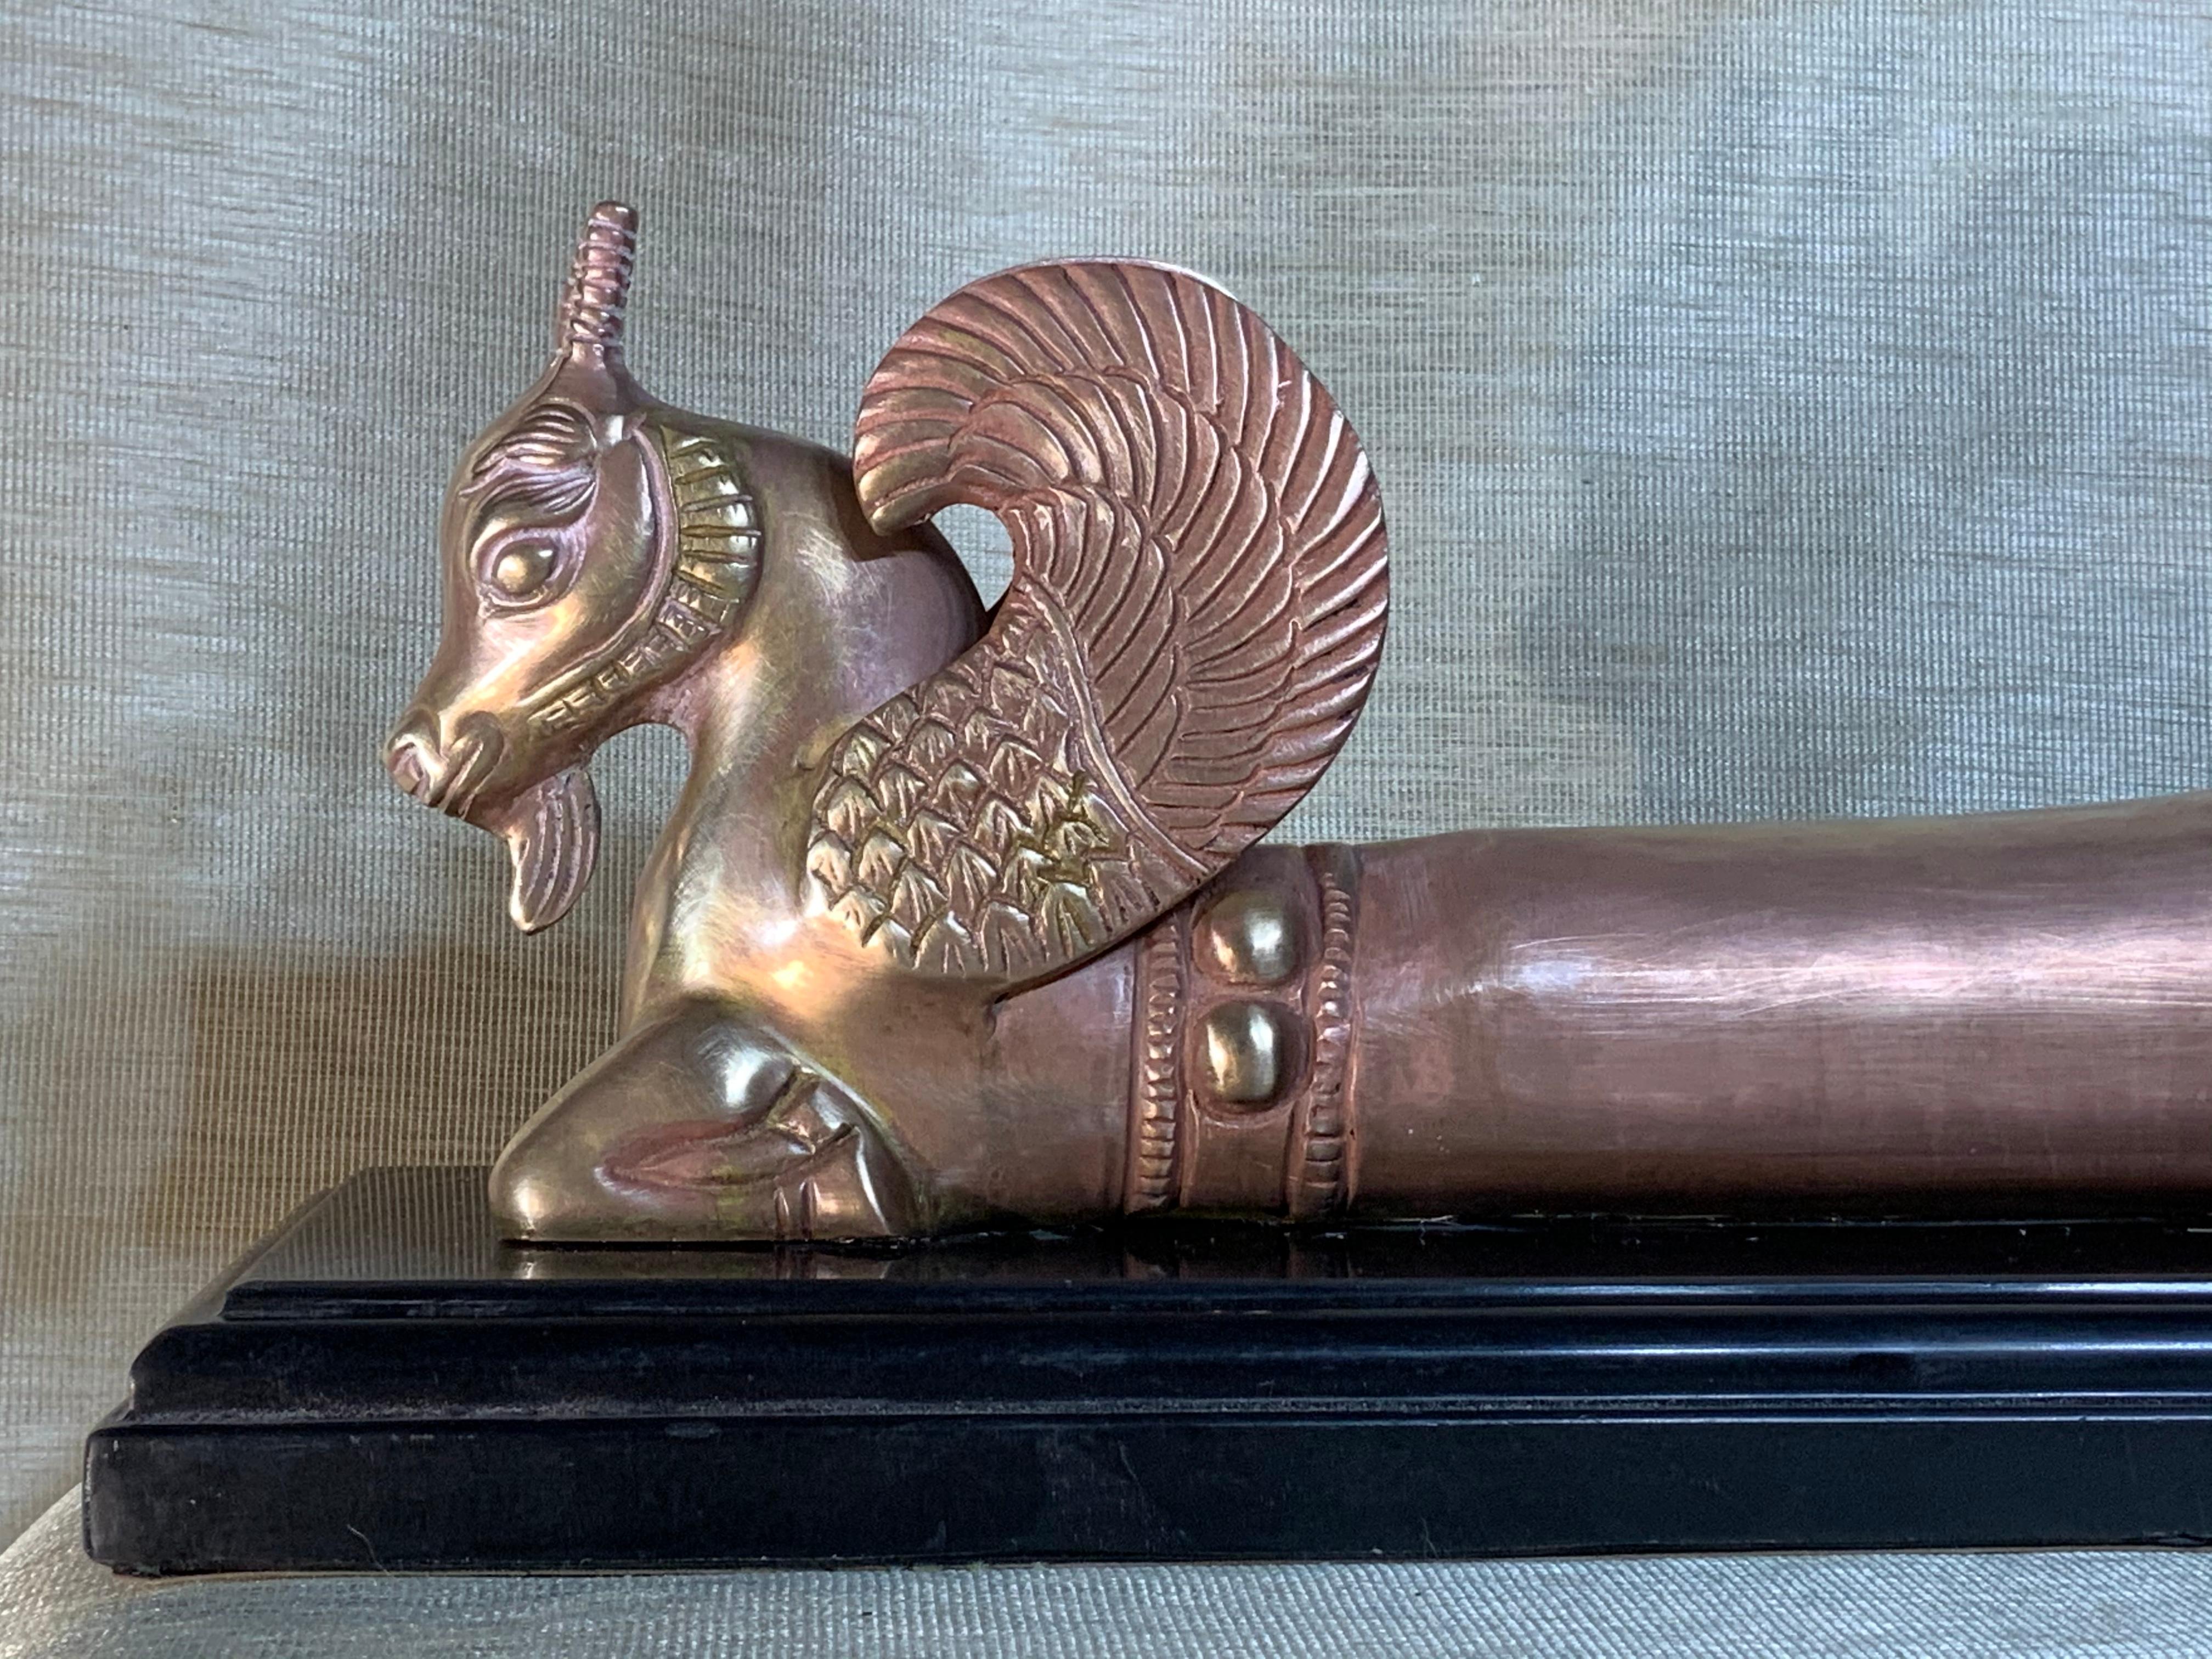 Cast Solid Brass of Bull Replica of the “Borovo Thracian Treasure